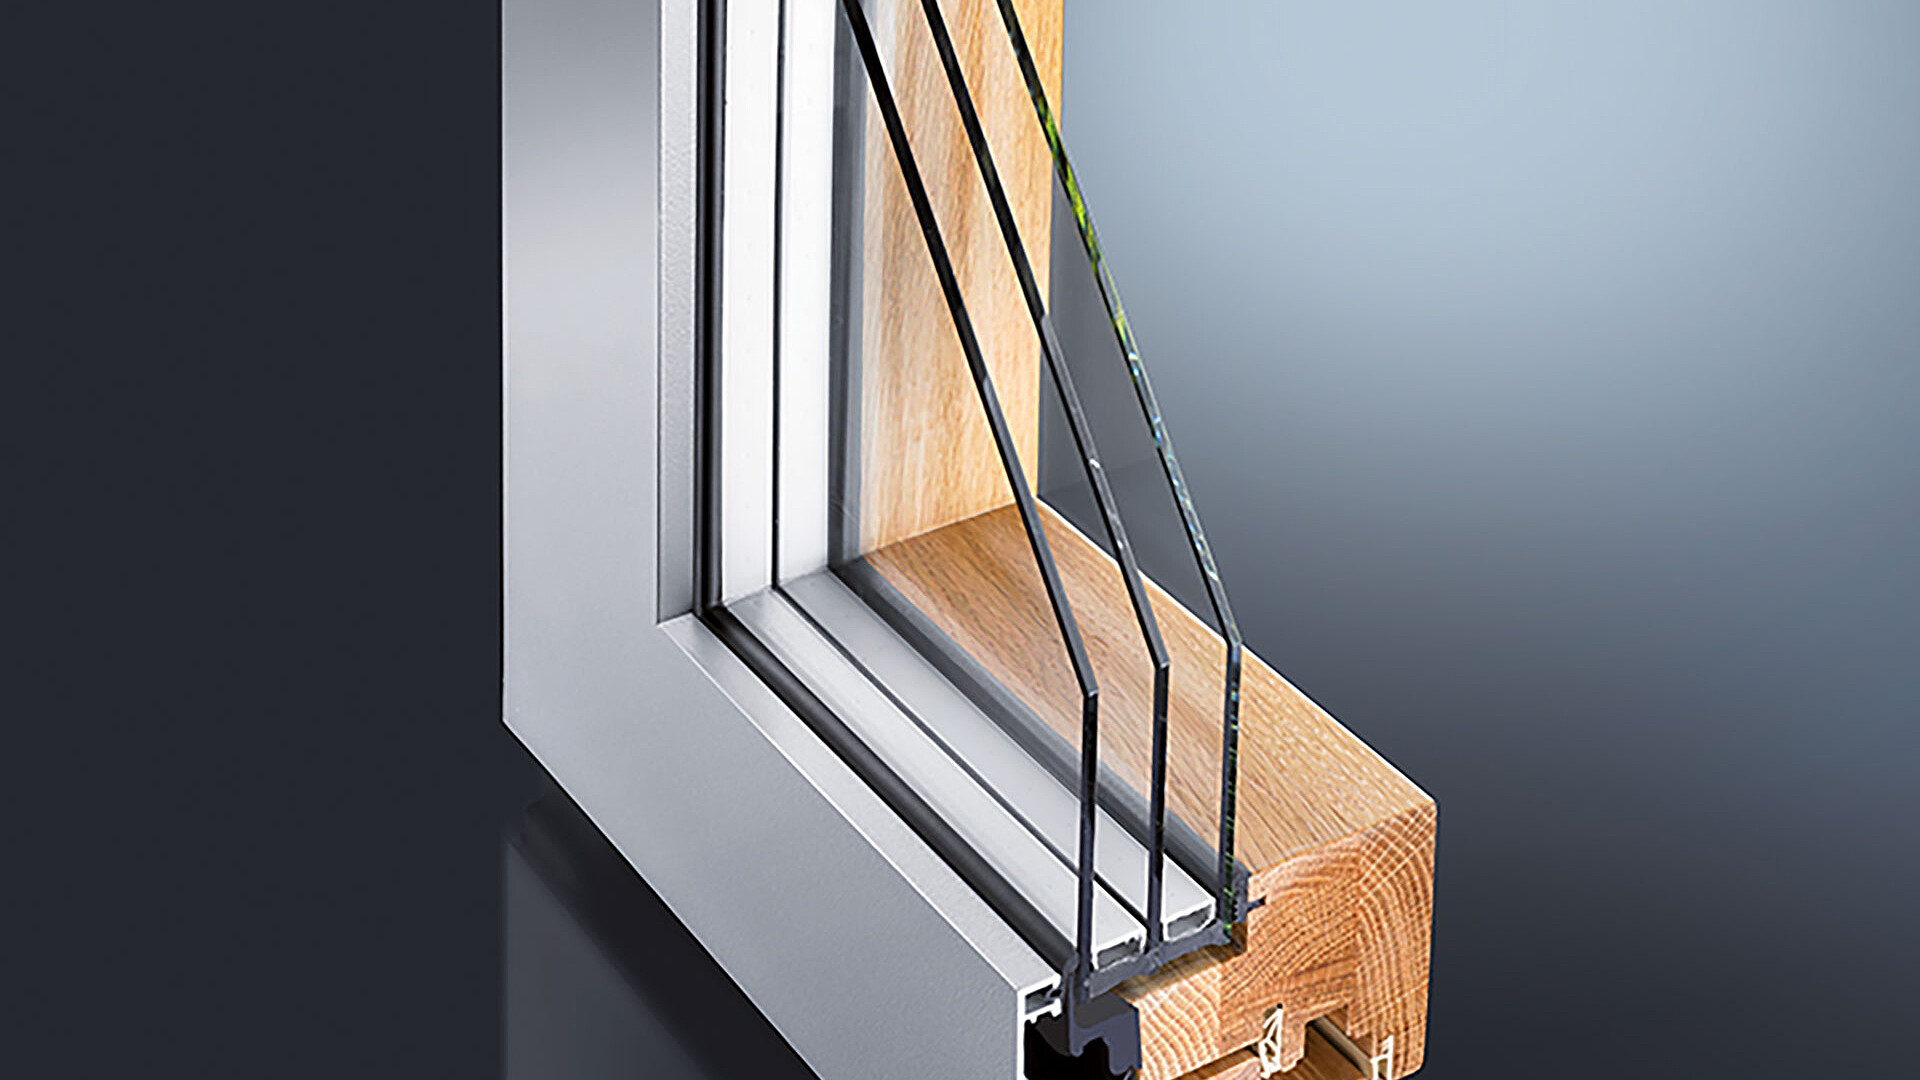 Das GUTMANN MIRA contour integral Holz-Aluminium Fenster- & Tür-System hat eine schmale Rahmenansicht mit komplett verdeckt liegendem Flügel. An der Sichtkante sind kleine Radien vorhanden.